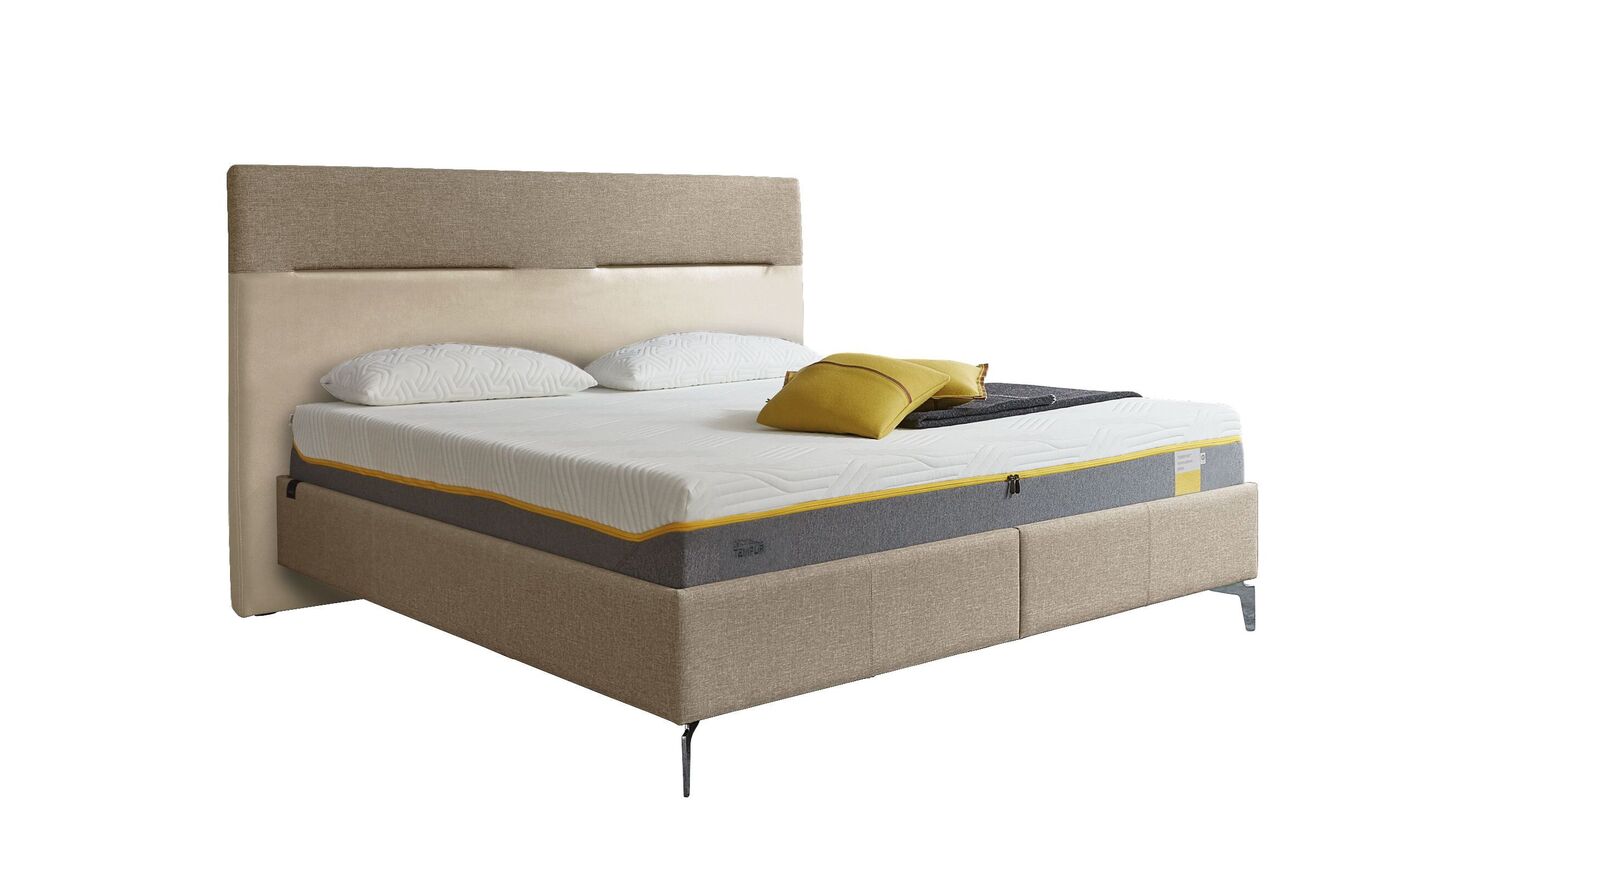 TEMPUR Bett Relax Texture mit Bezug in Webstoff und Kunstleder in Creme